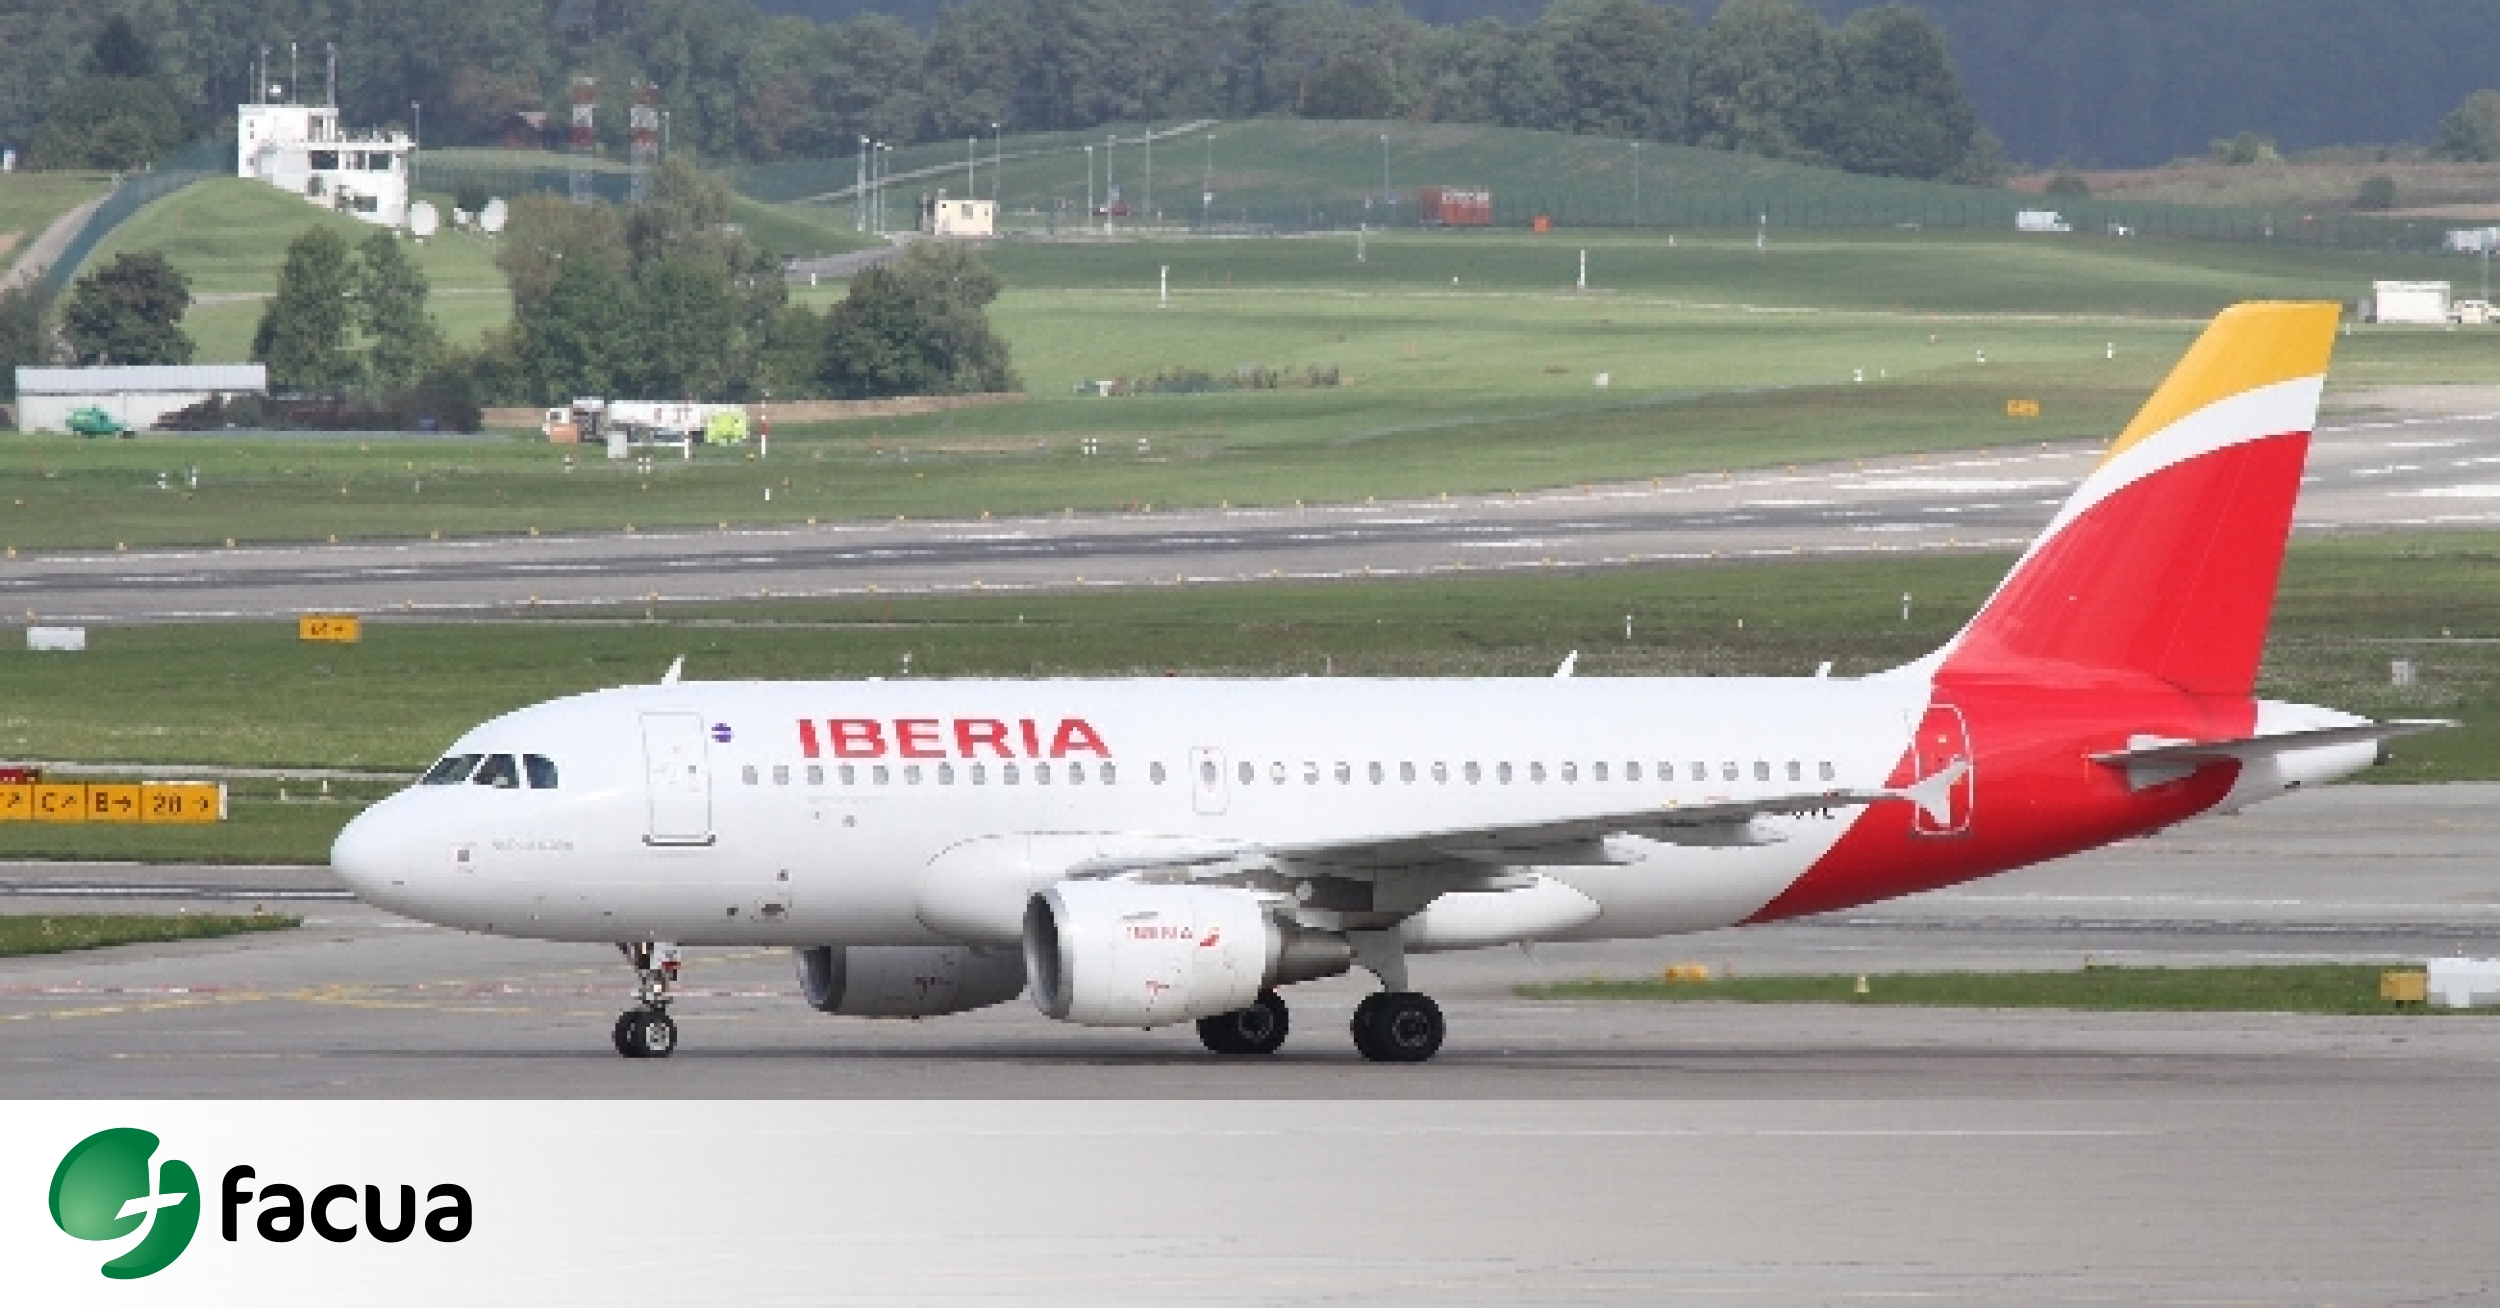 la actuación de FACUA, Iberia indemniza con 1.500 euros a un que perdió maleta